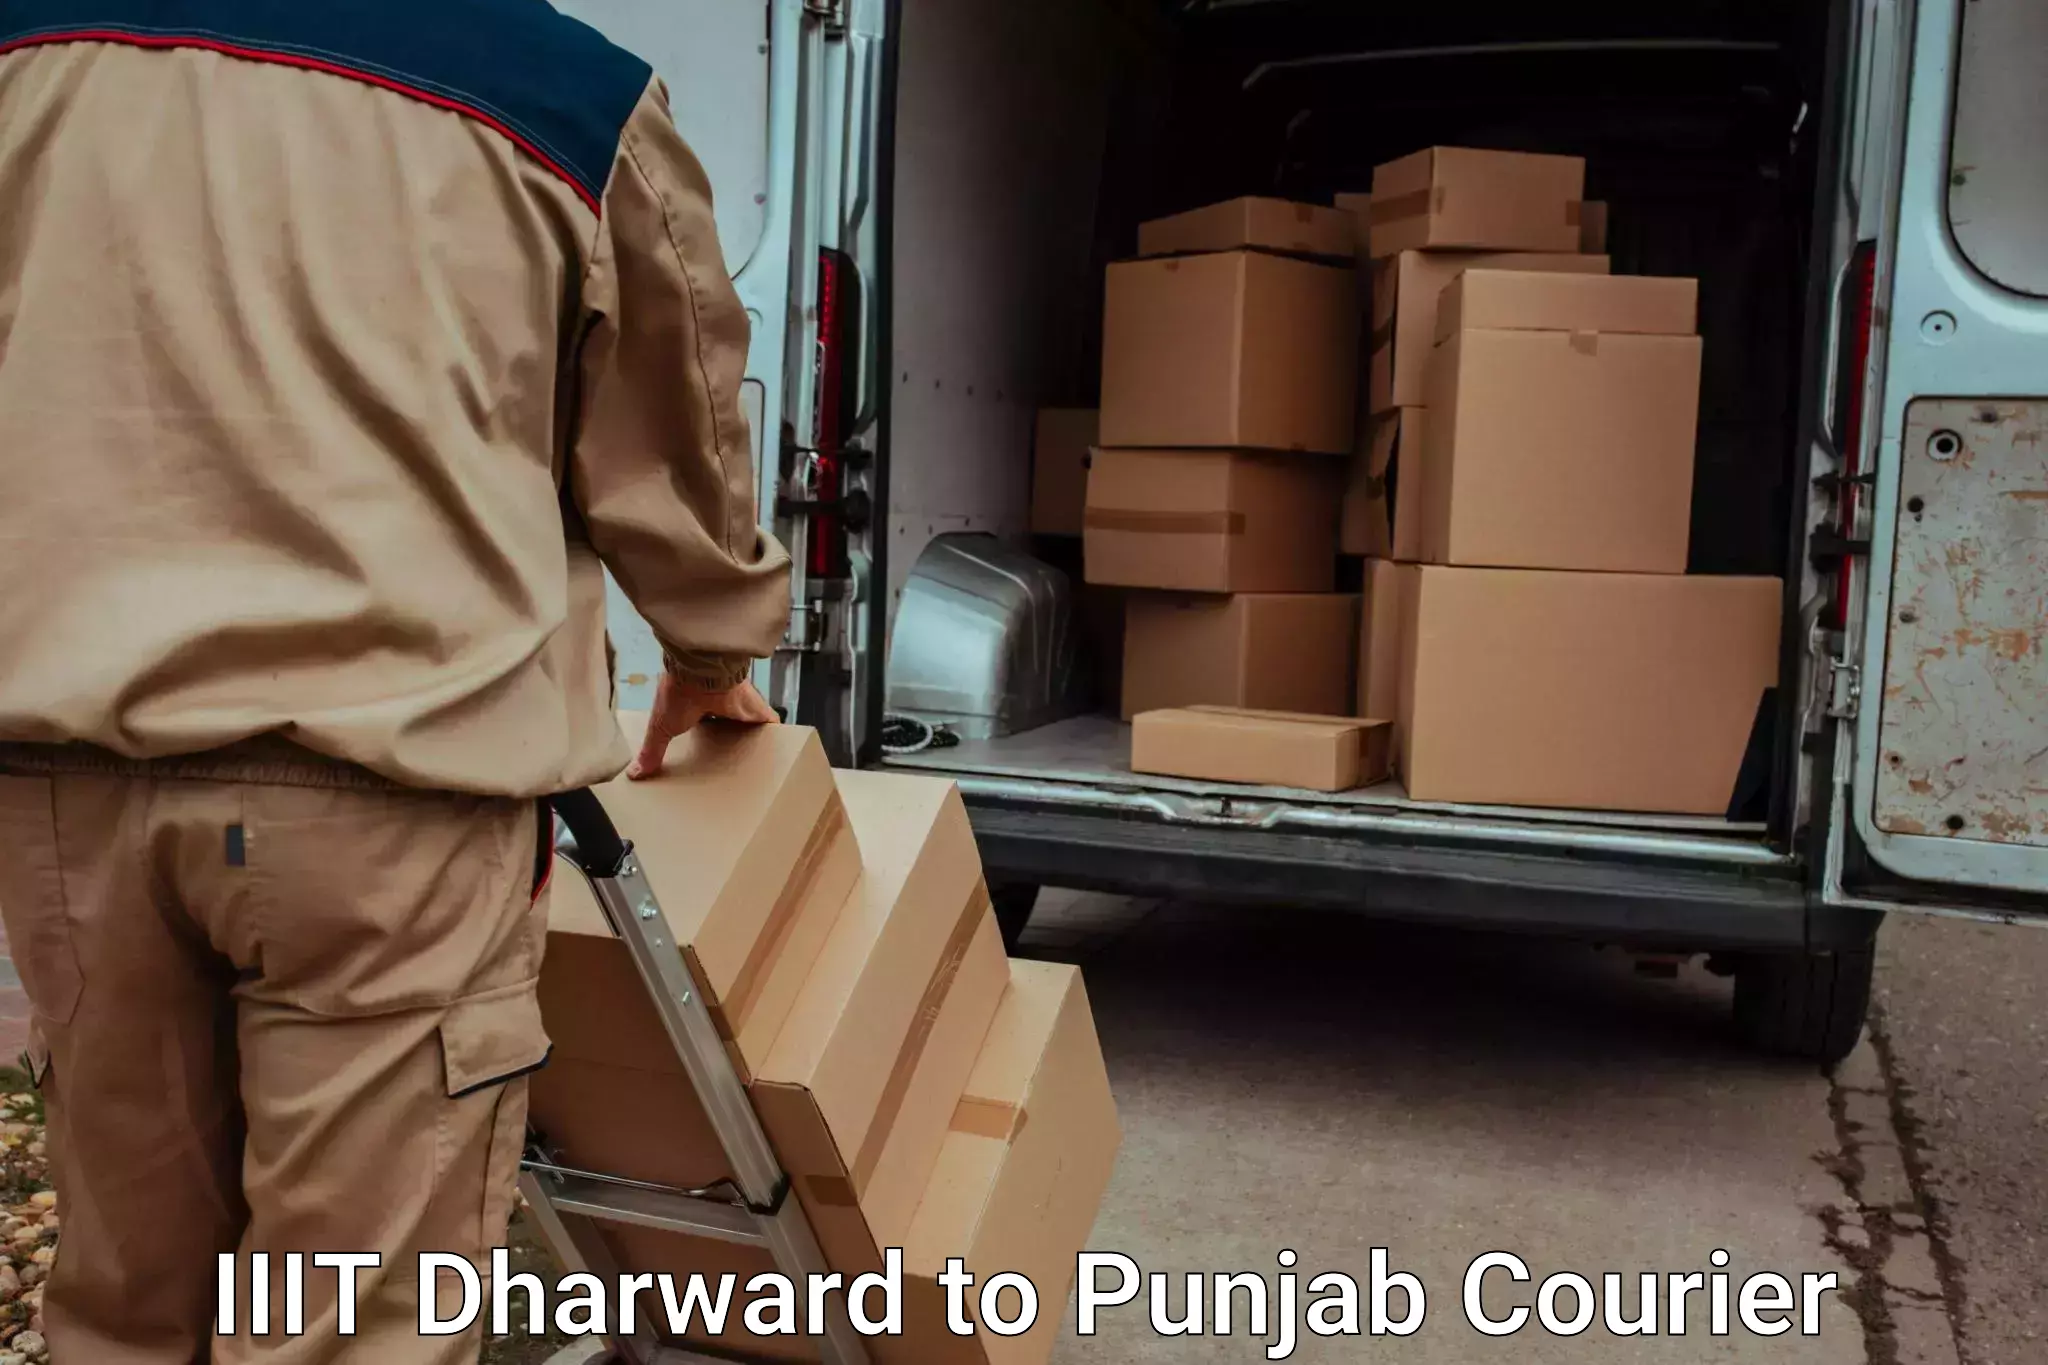 Household transport experts IIIT Dharward to Zirakpur